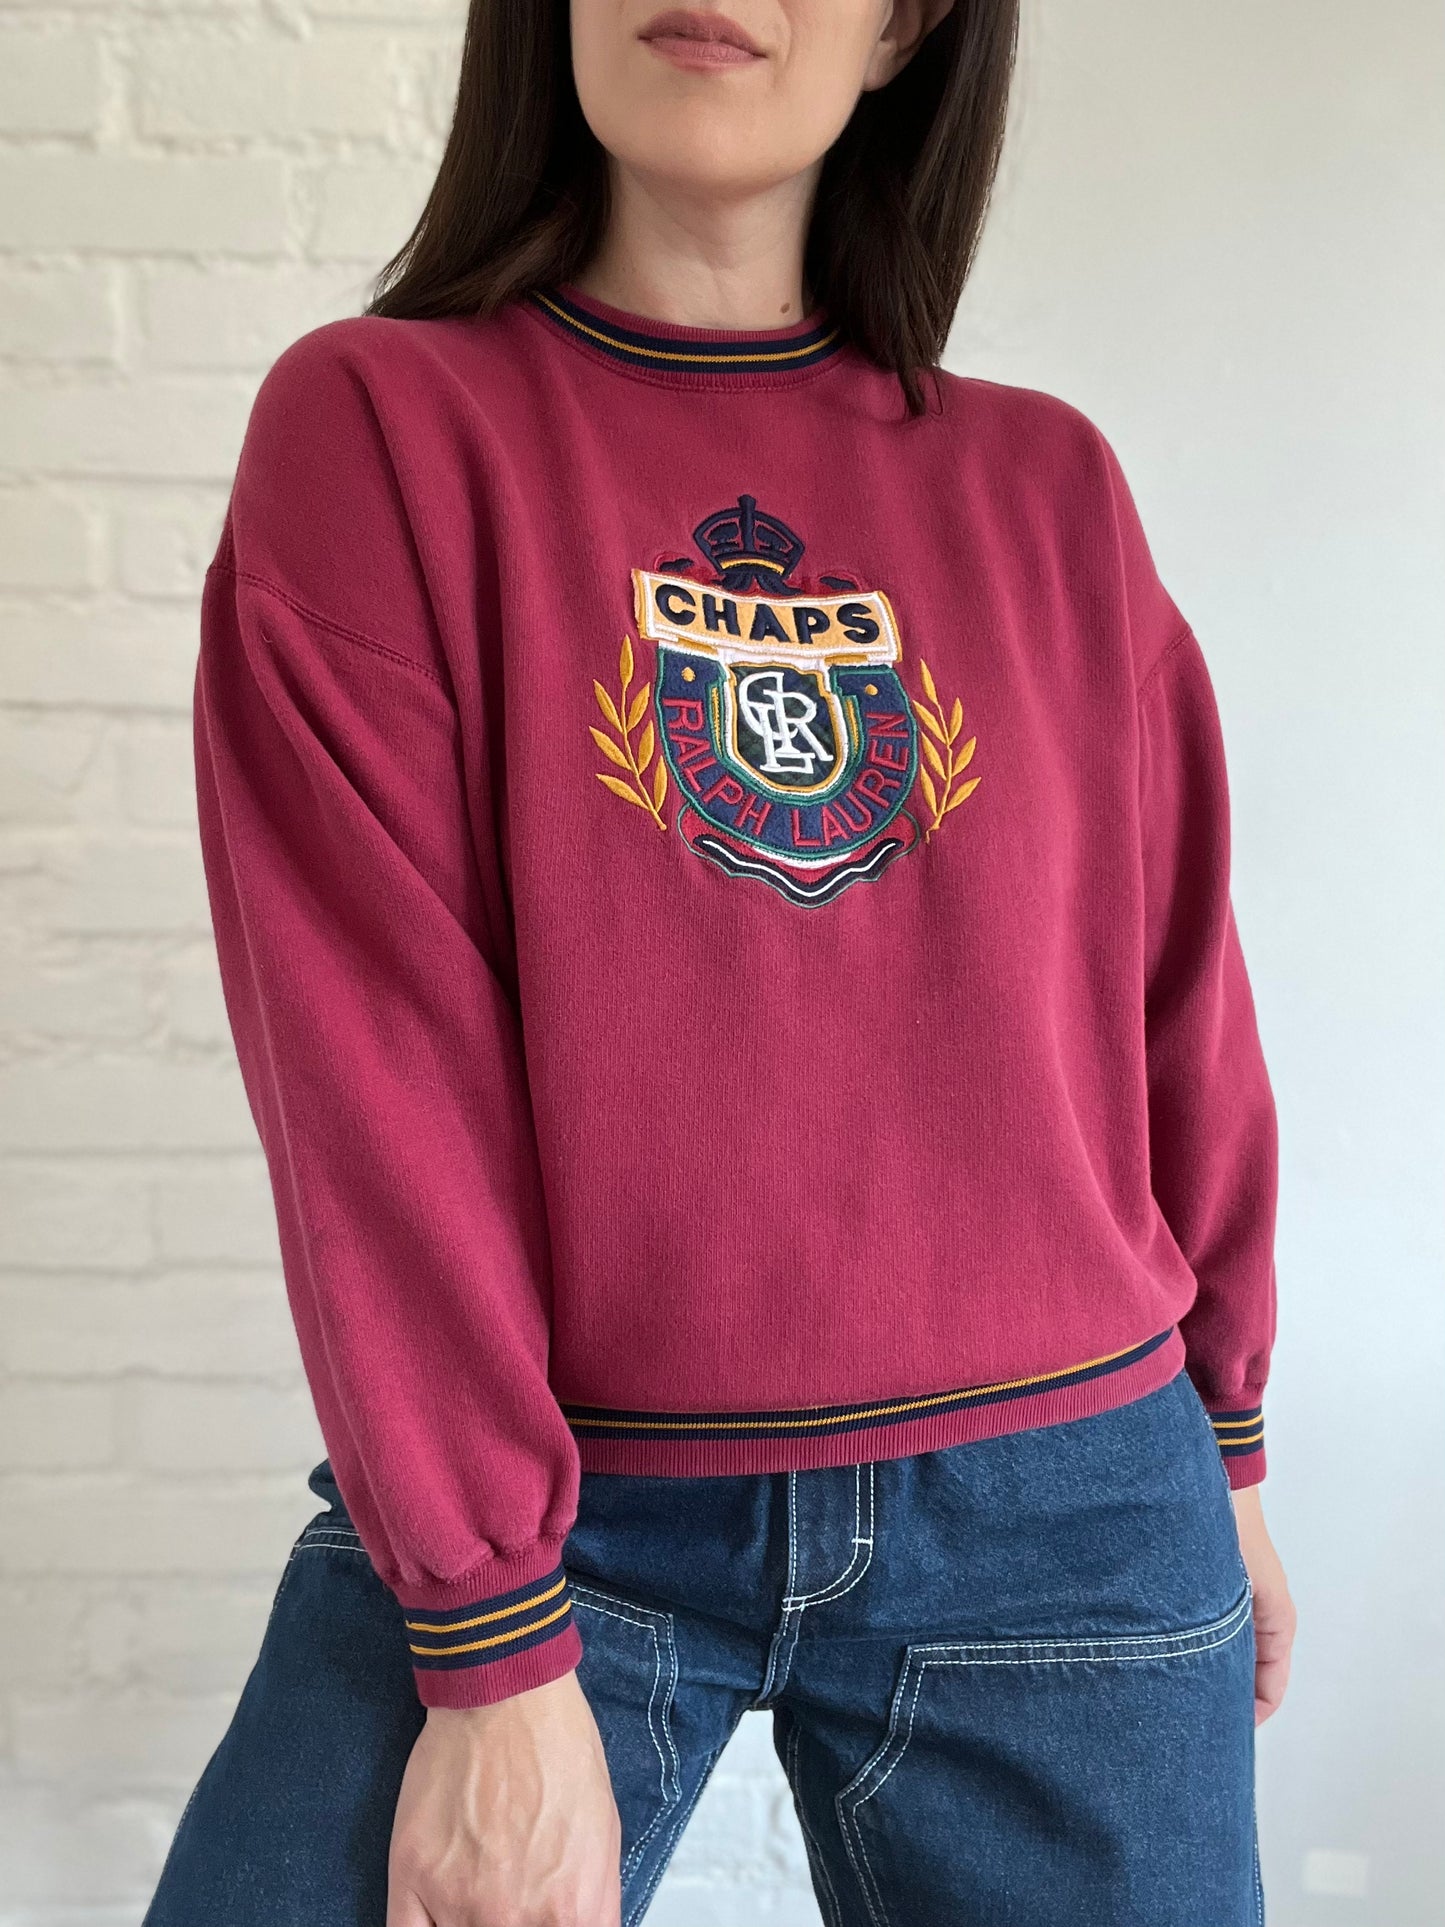 Ralph Lauren Chaps Emblem Sweater - Size S